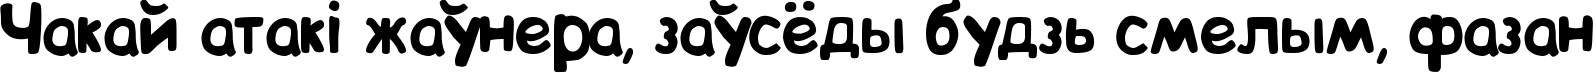 Пример написания шрифтом BIP текста на белорусском